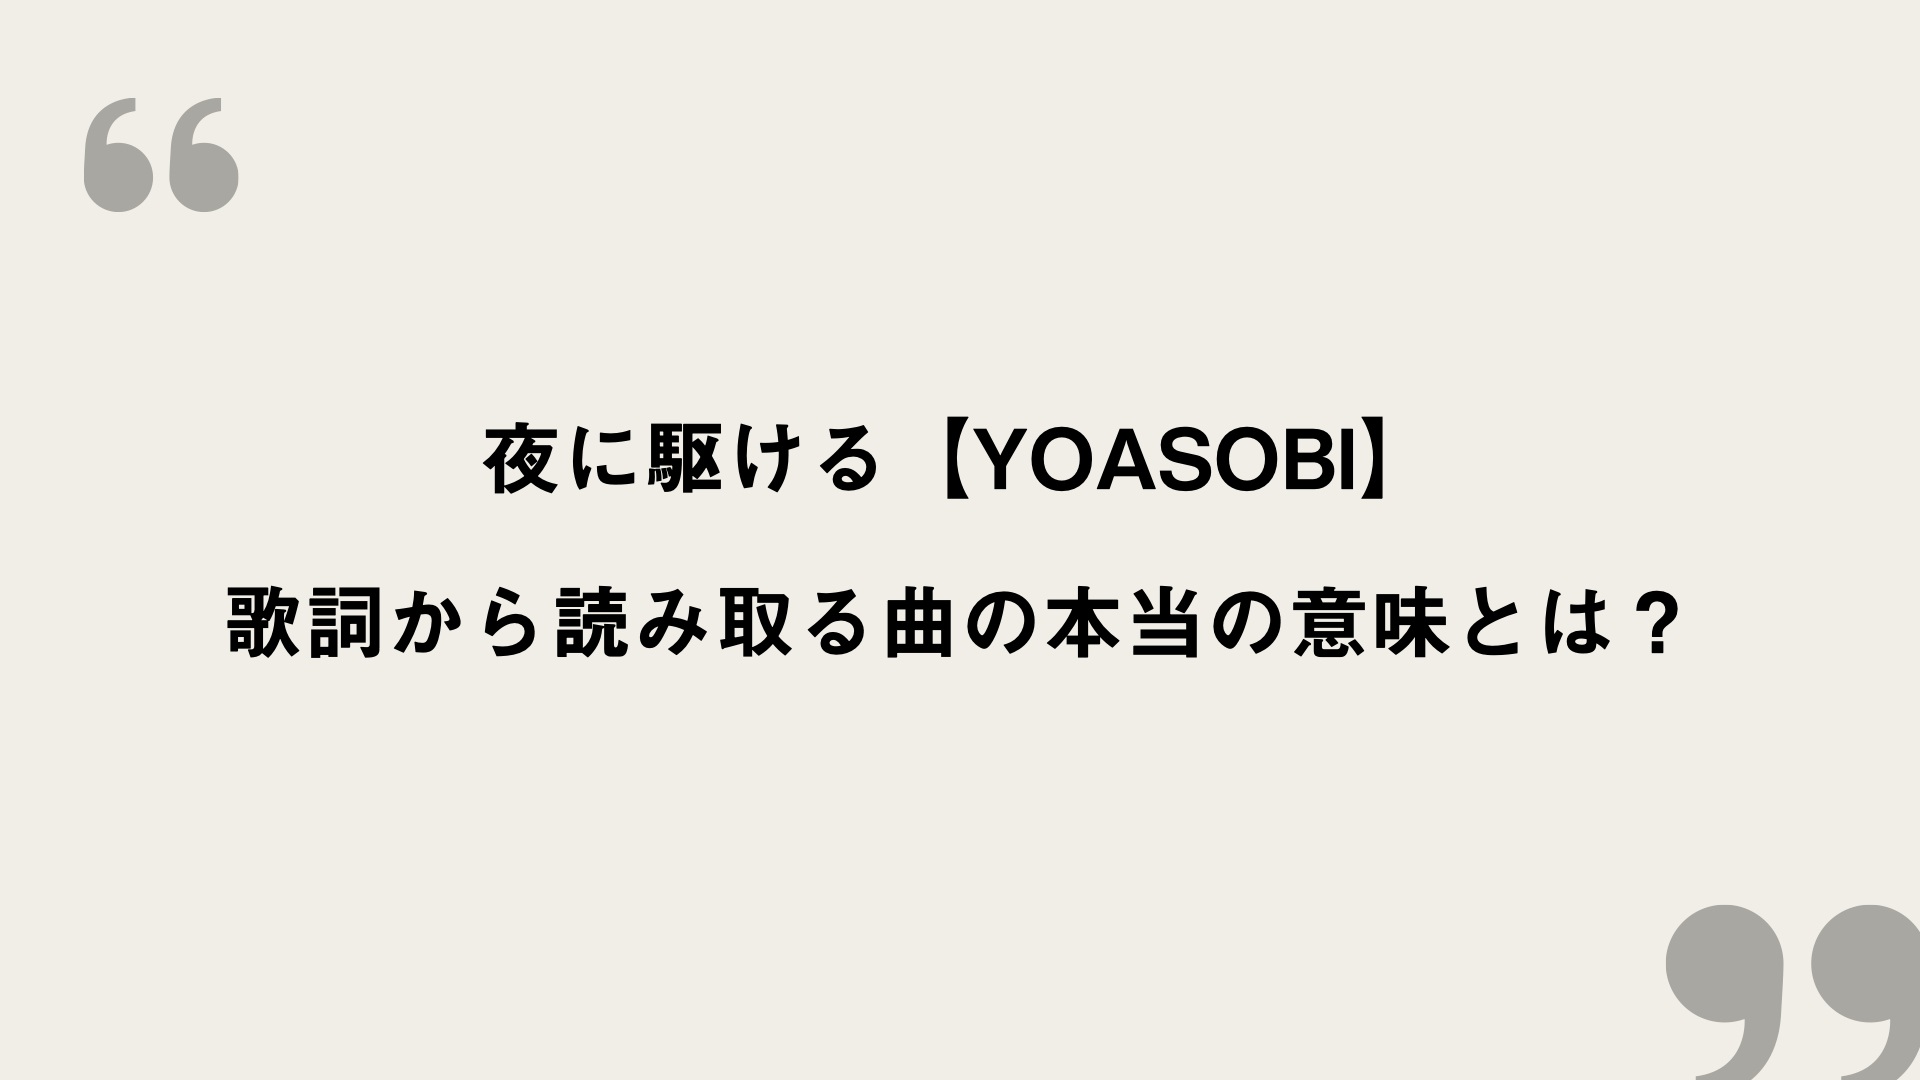 夜に駆ける Yoasobi 歌詞の意味を考察 歌詞から読み取る曲の本当の意味とは Framu Media